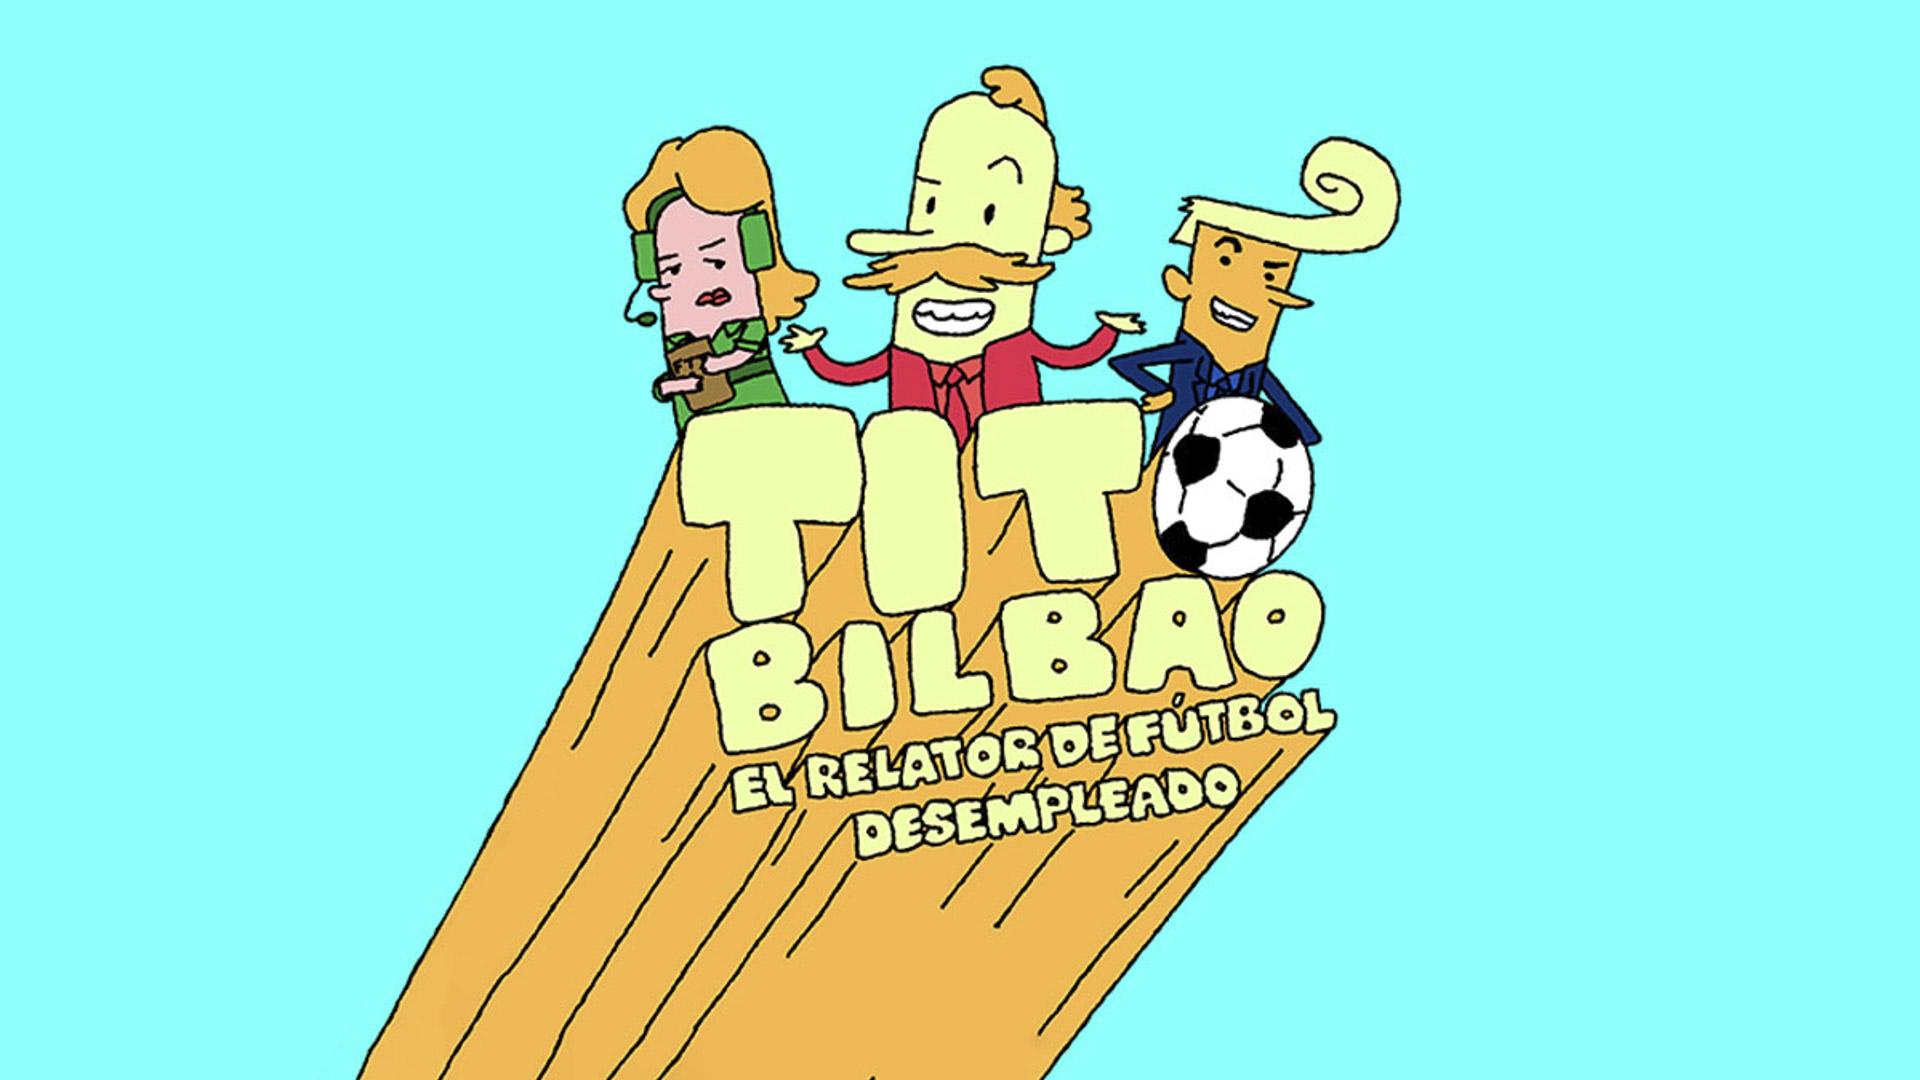 Tito Bilbao